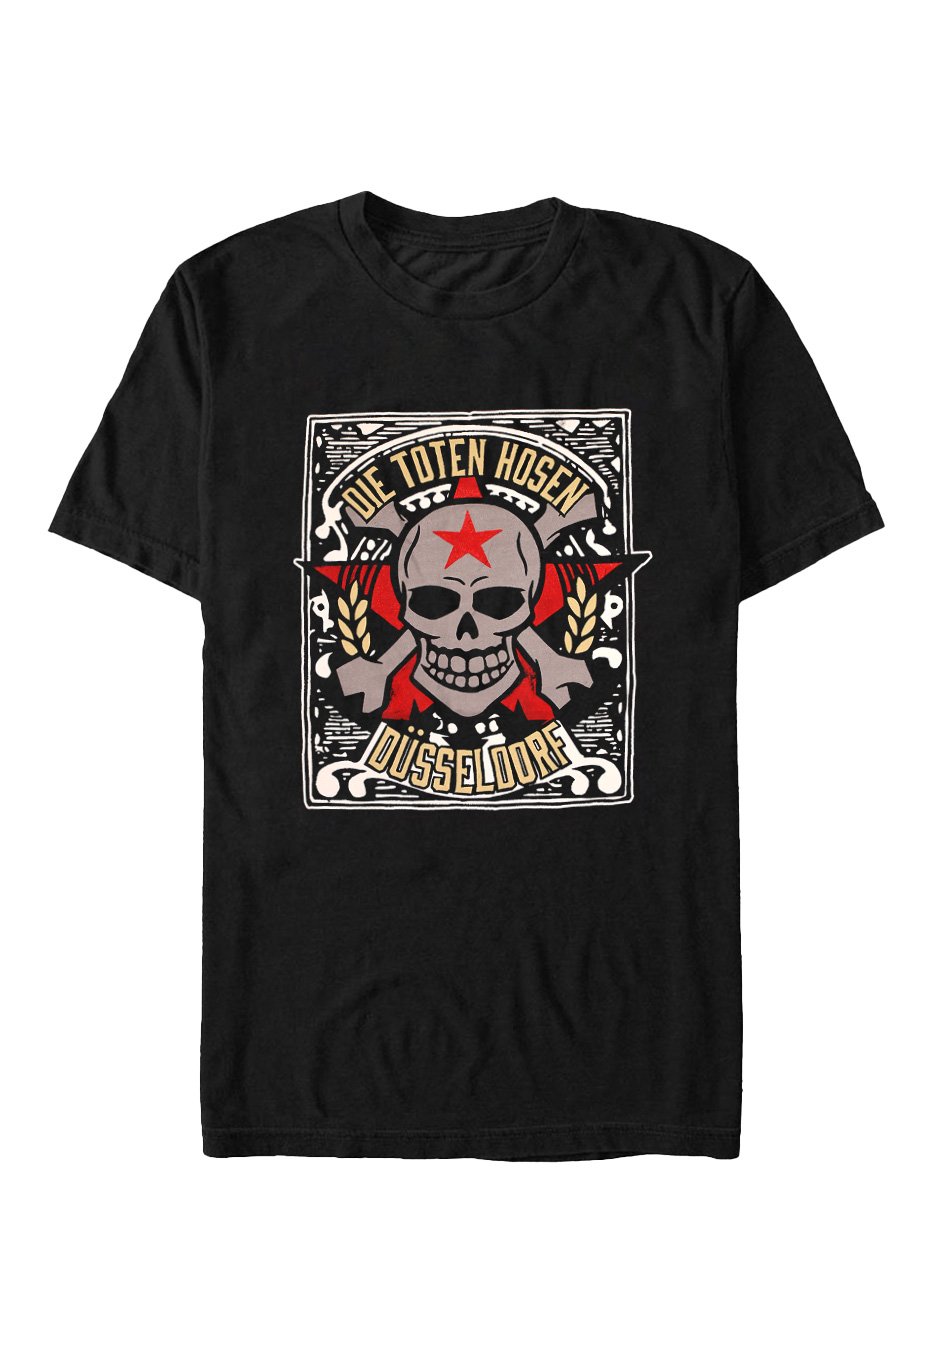 Die Toten Hosen - Düsseldorf - T-Shirt